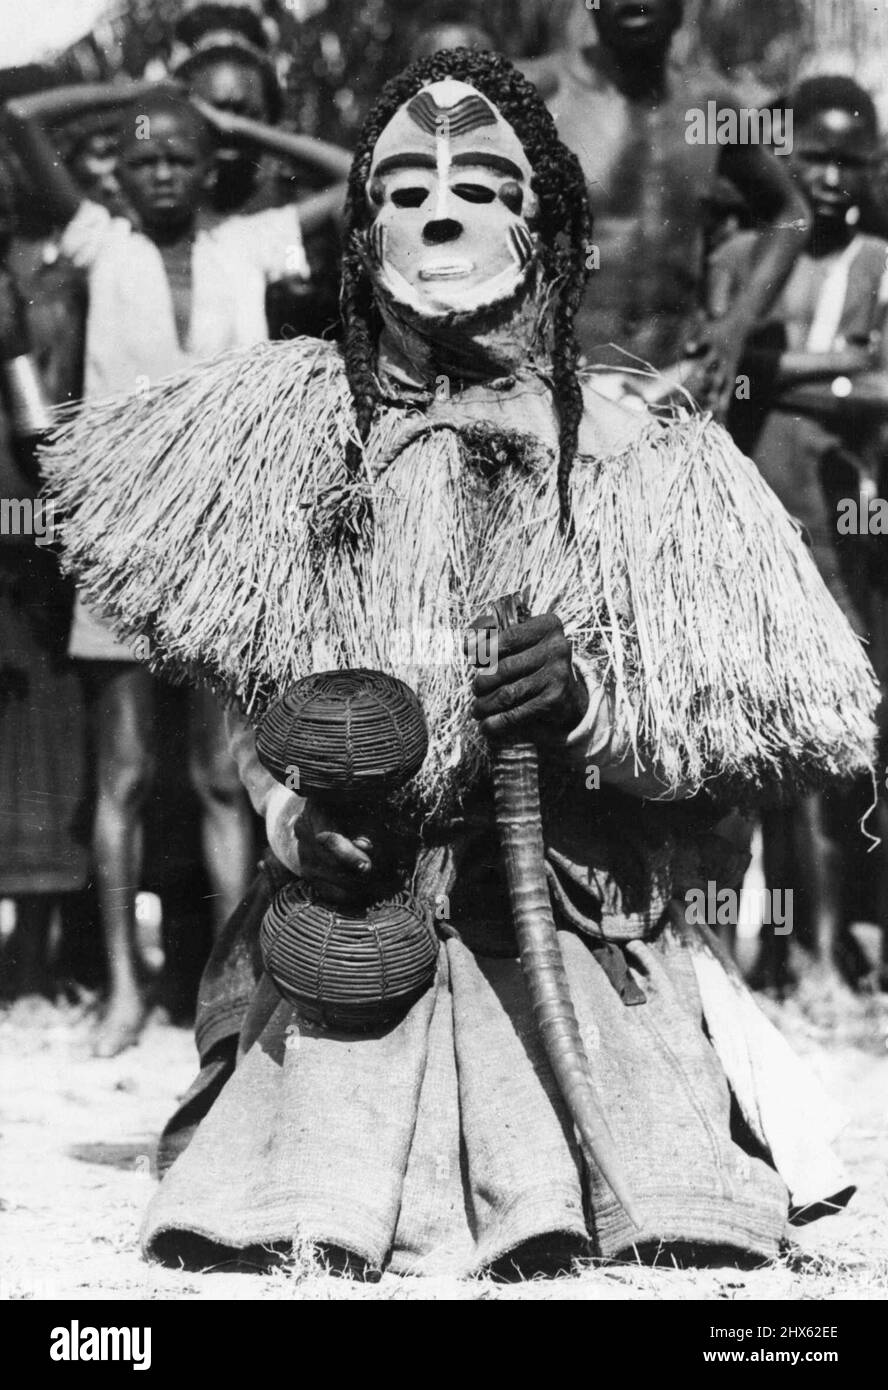 Congo Folklore -- einer der etwa zwanzig Charaktere im Mbuya-Tanz des Bapende-Stammes... Ein afrikanisches Folklore-"Spiel". Er trägt eine weiß gestrichene Maske, Pigtails, und trägt einen Korb mit getrockneten Samen und einem Antelope-Horn. Die Folklore Afrikas liegt nicht in Büchern, sondern in den rhythmischen Tribal-Tänzen, die von Generation zu Generation weitergegeben werden. Die Ursprünge der Tanzschritte, die Gesten und die manchmal ängstlich aussehenden Kostüme liegen tief in der Vergangenheit und beschäftigen sich mit Dürre und Regen Stockfoto